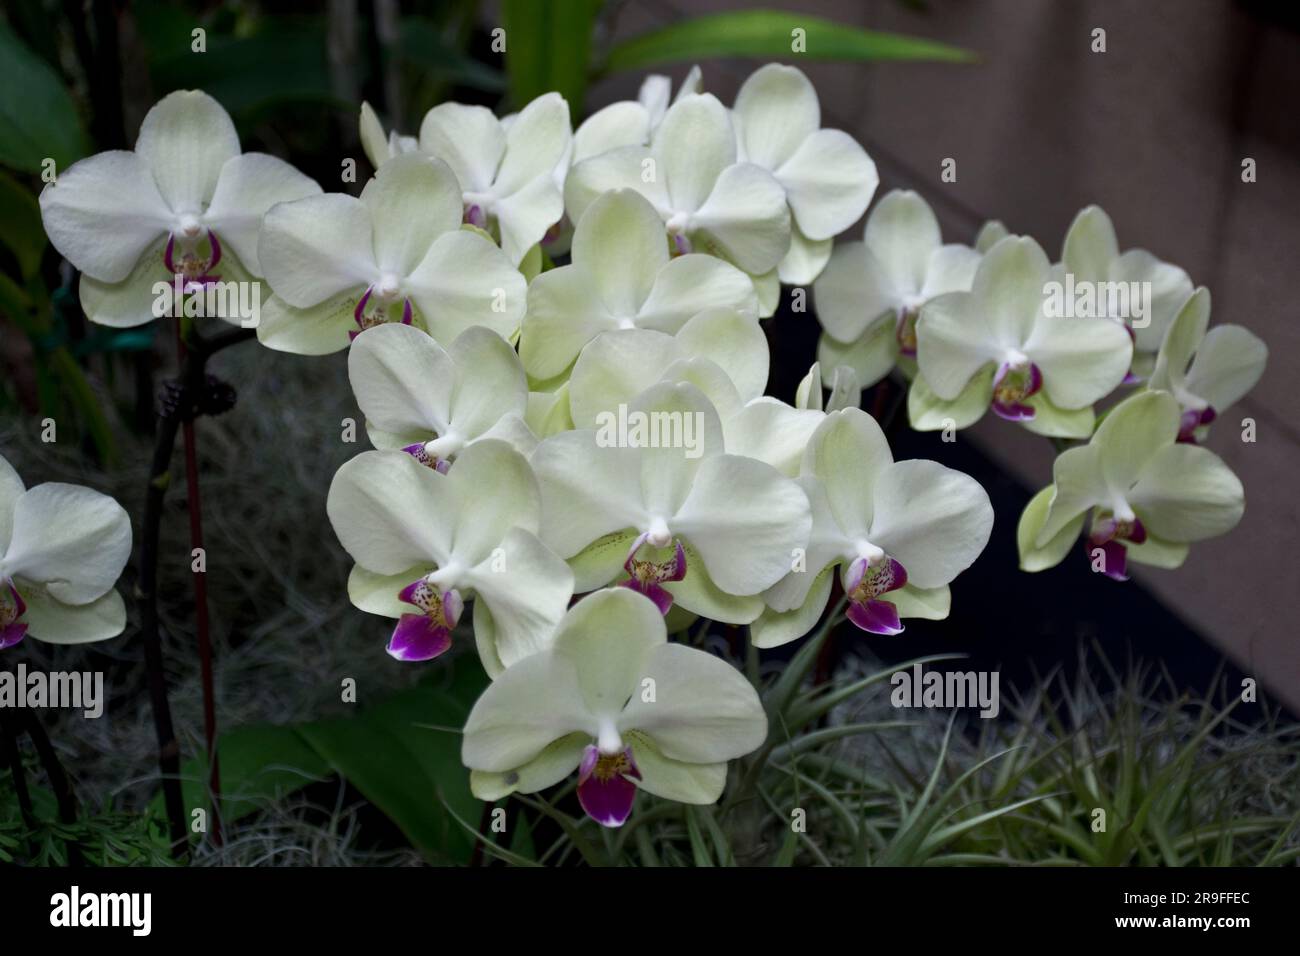 Foto di primo piano di bellissimi fiori di orchidee bianche color crema ornamentale con alcuni petali di colore viola Foto Stock